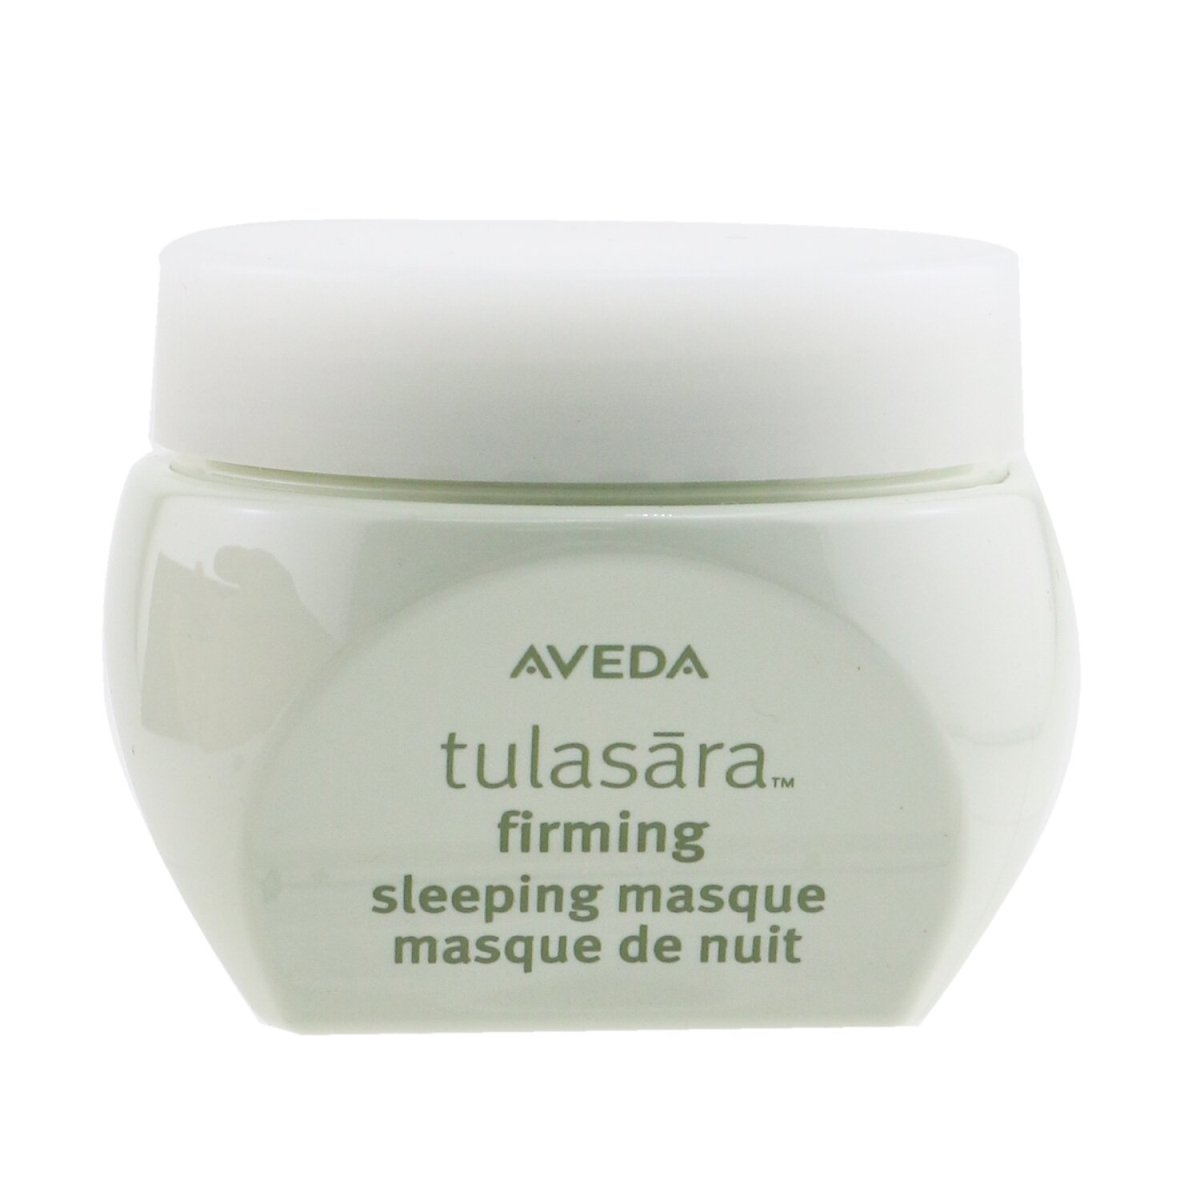 Picture of Aveda 261249 1.7 oz Tulasara Firming Sleeping Masque